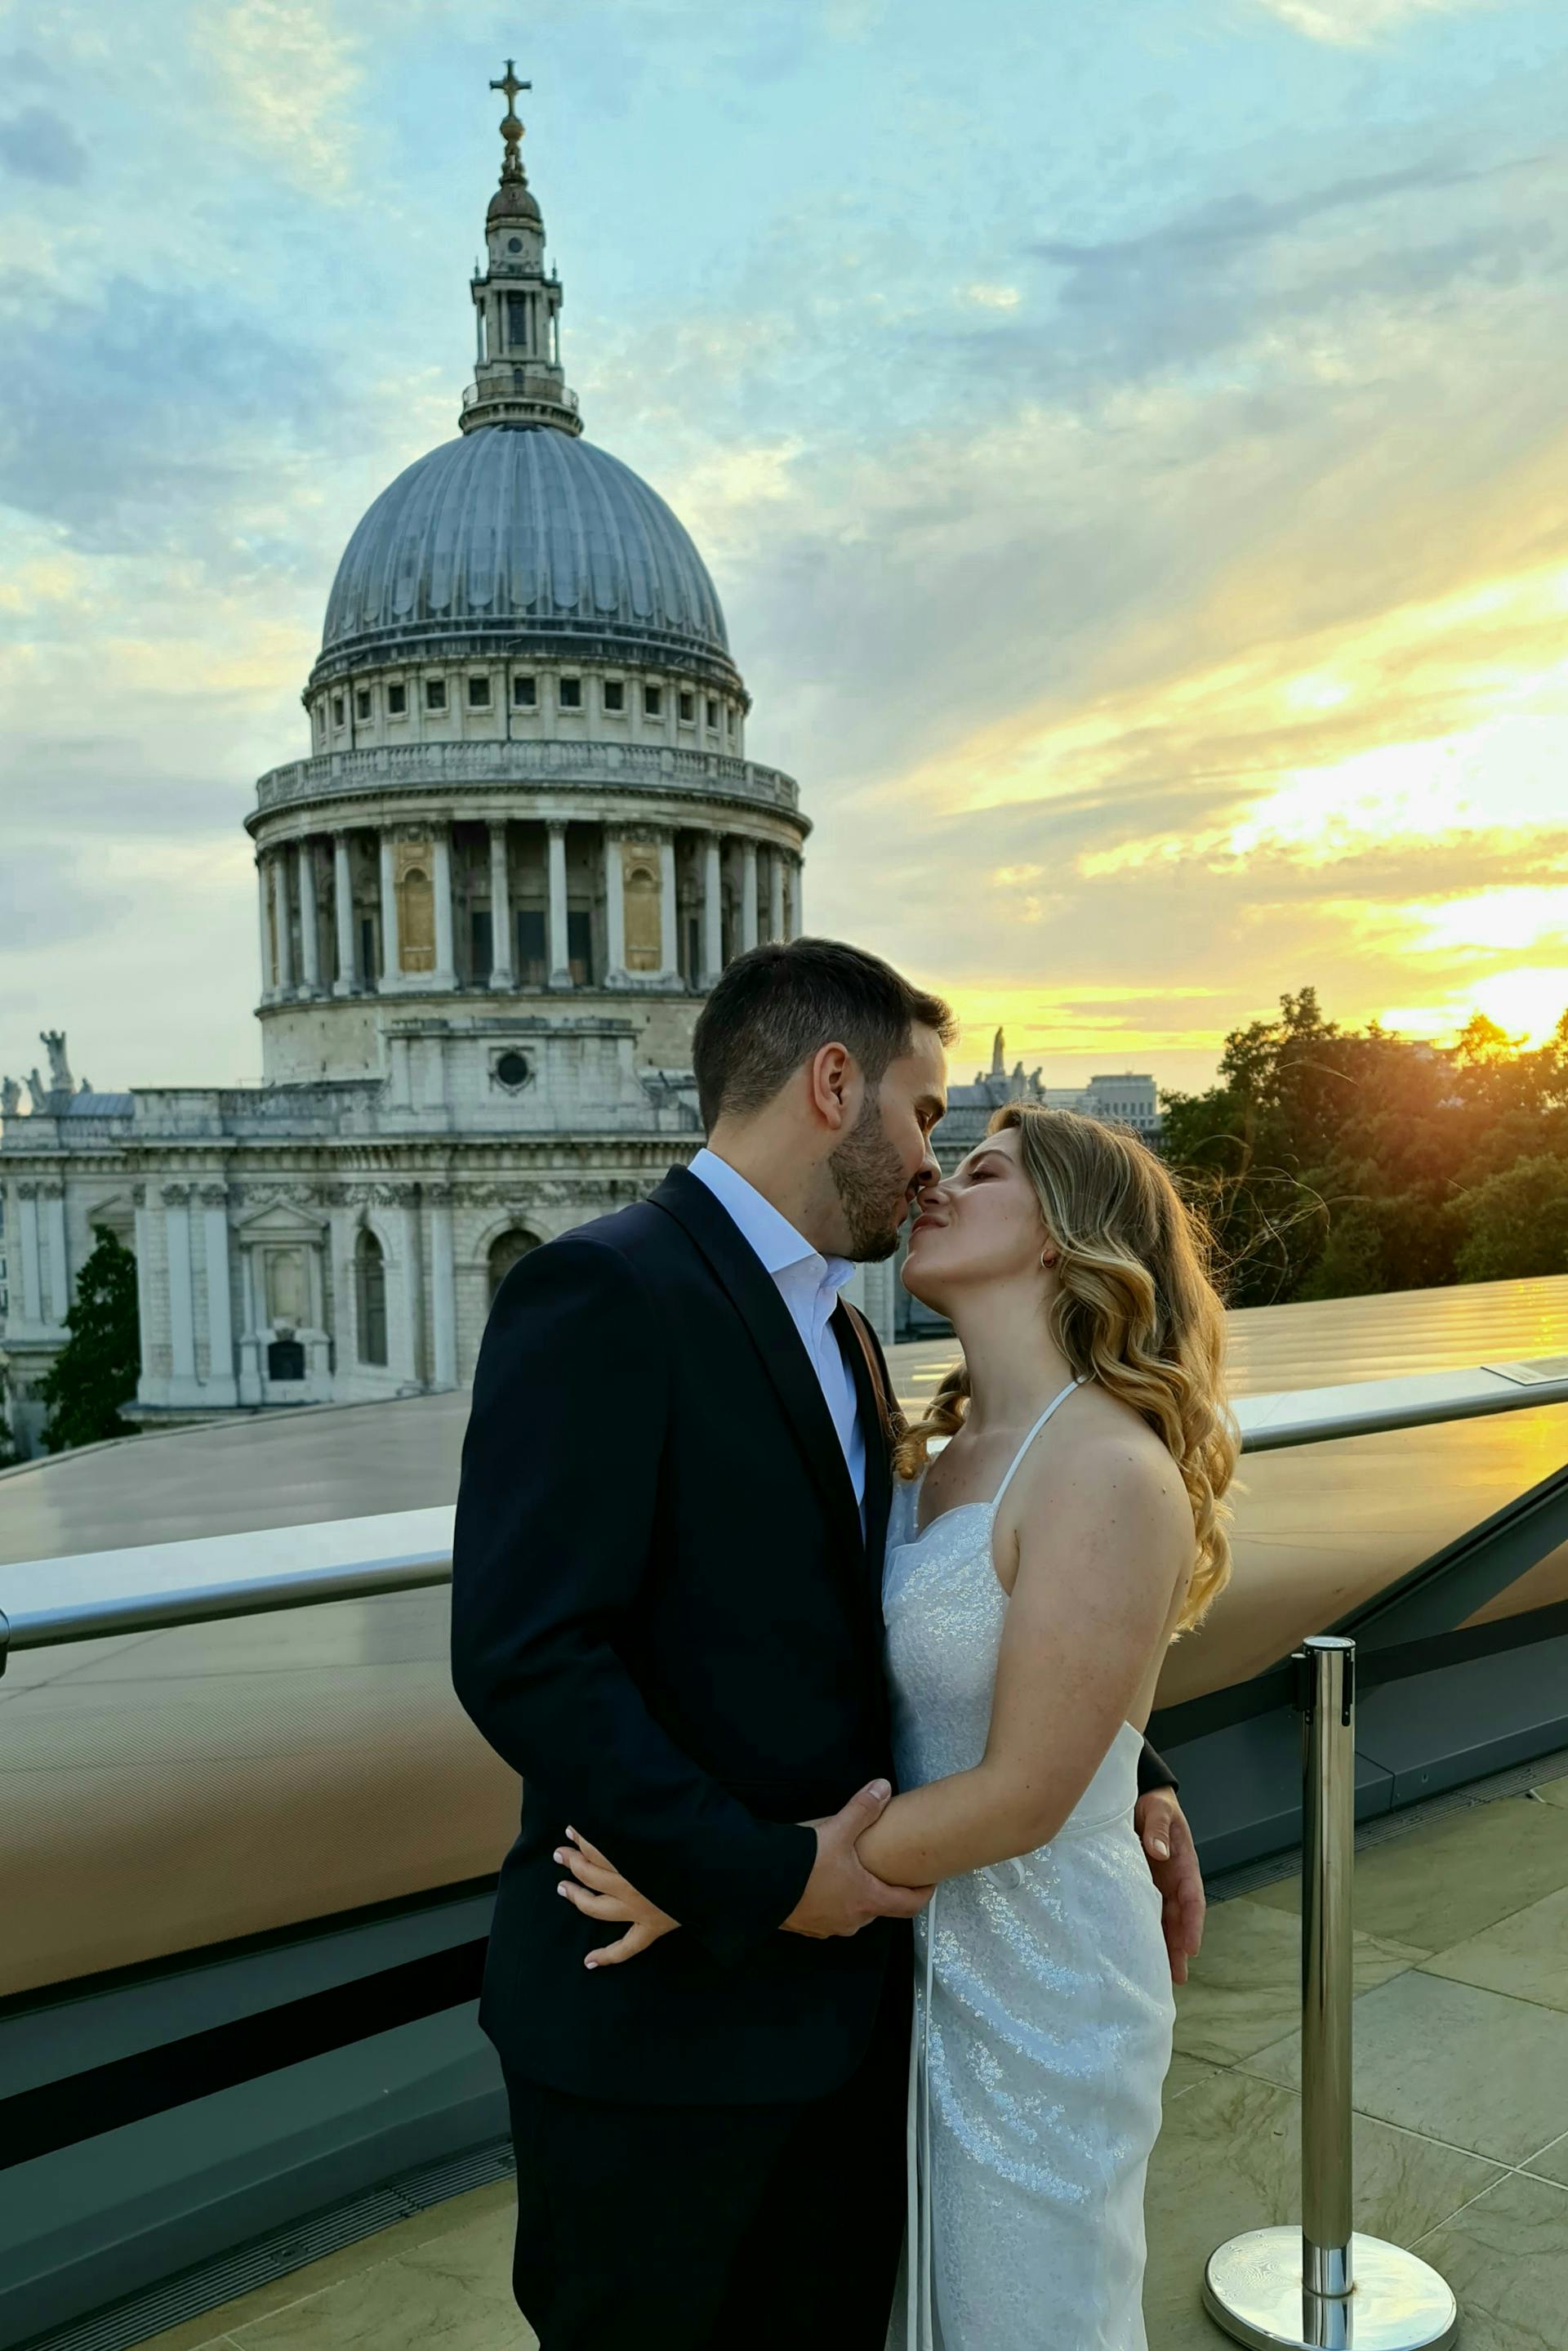 Un homme et une femme sur le point de s'embrasser avec une vue pittoresque en arrière-plan | Source : Pexels